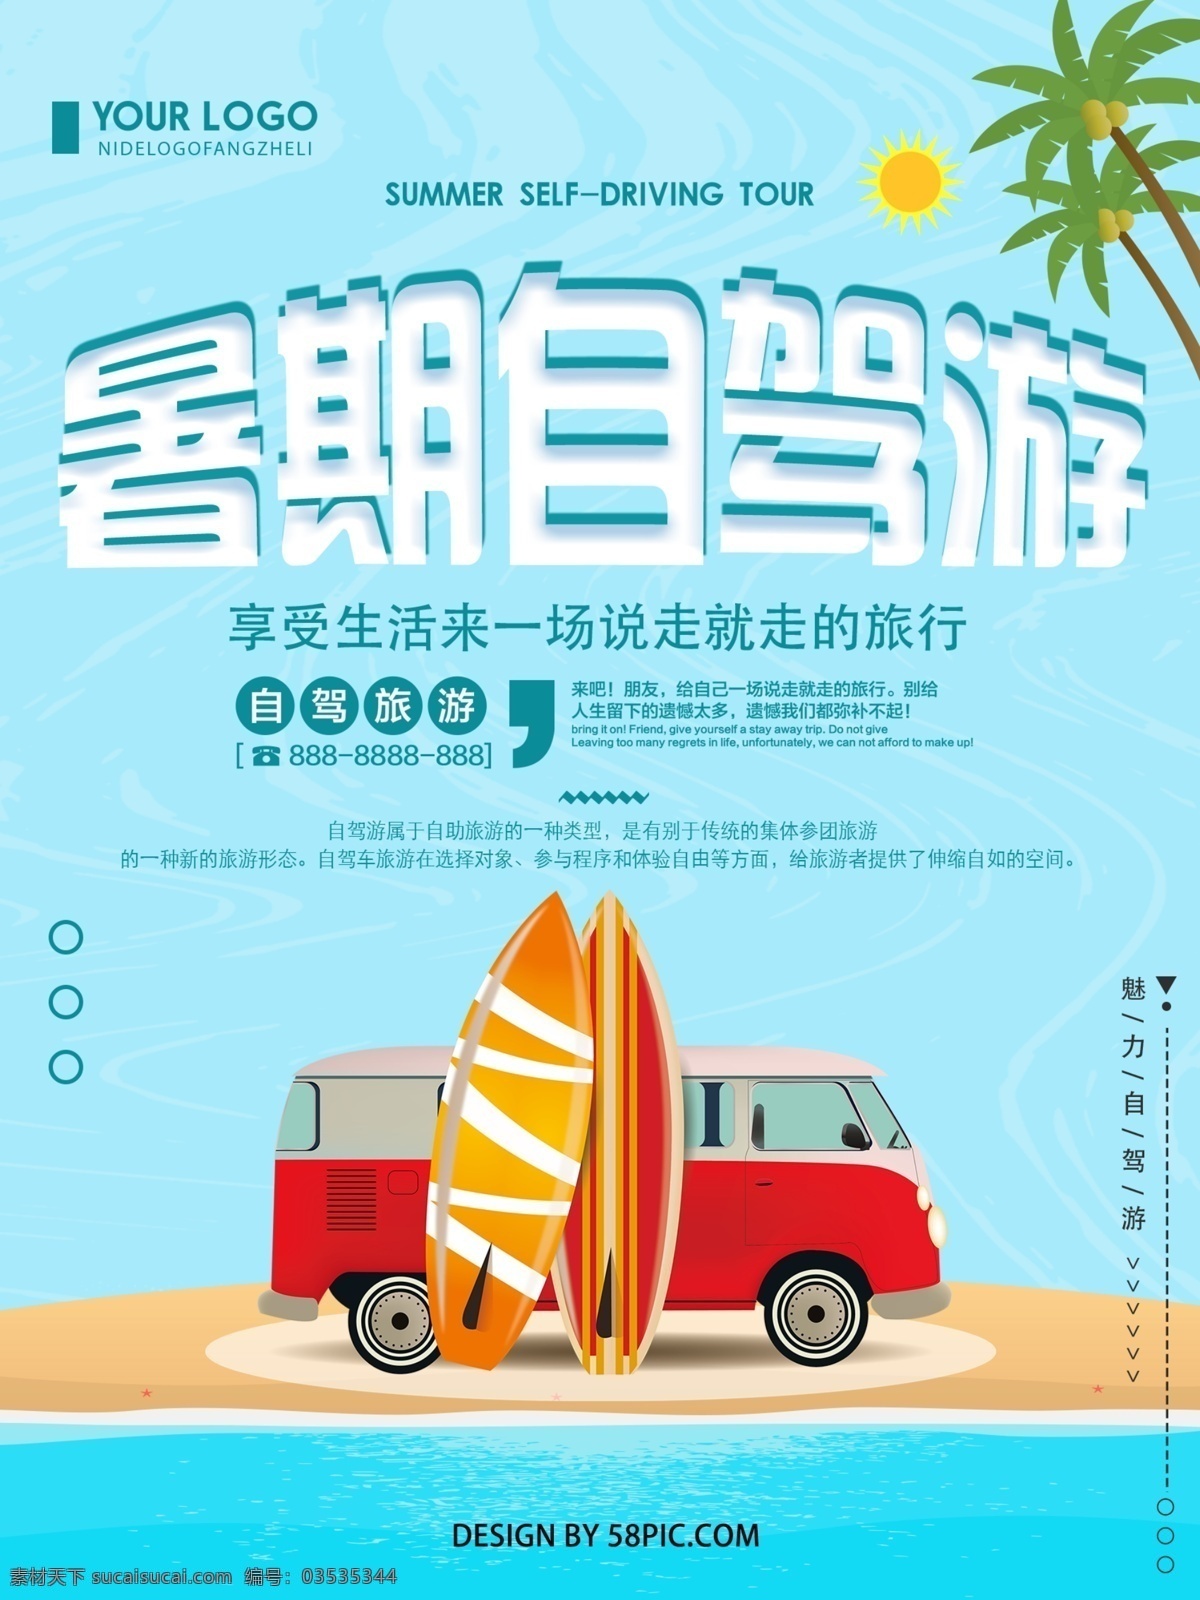 蓝色 清新 简约 暑期 自驾游 旅游 宣传海报 暑期自驾游 旅游海报 自驾游宣传 海报 创意